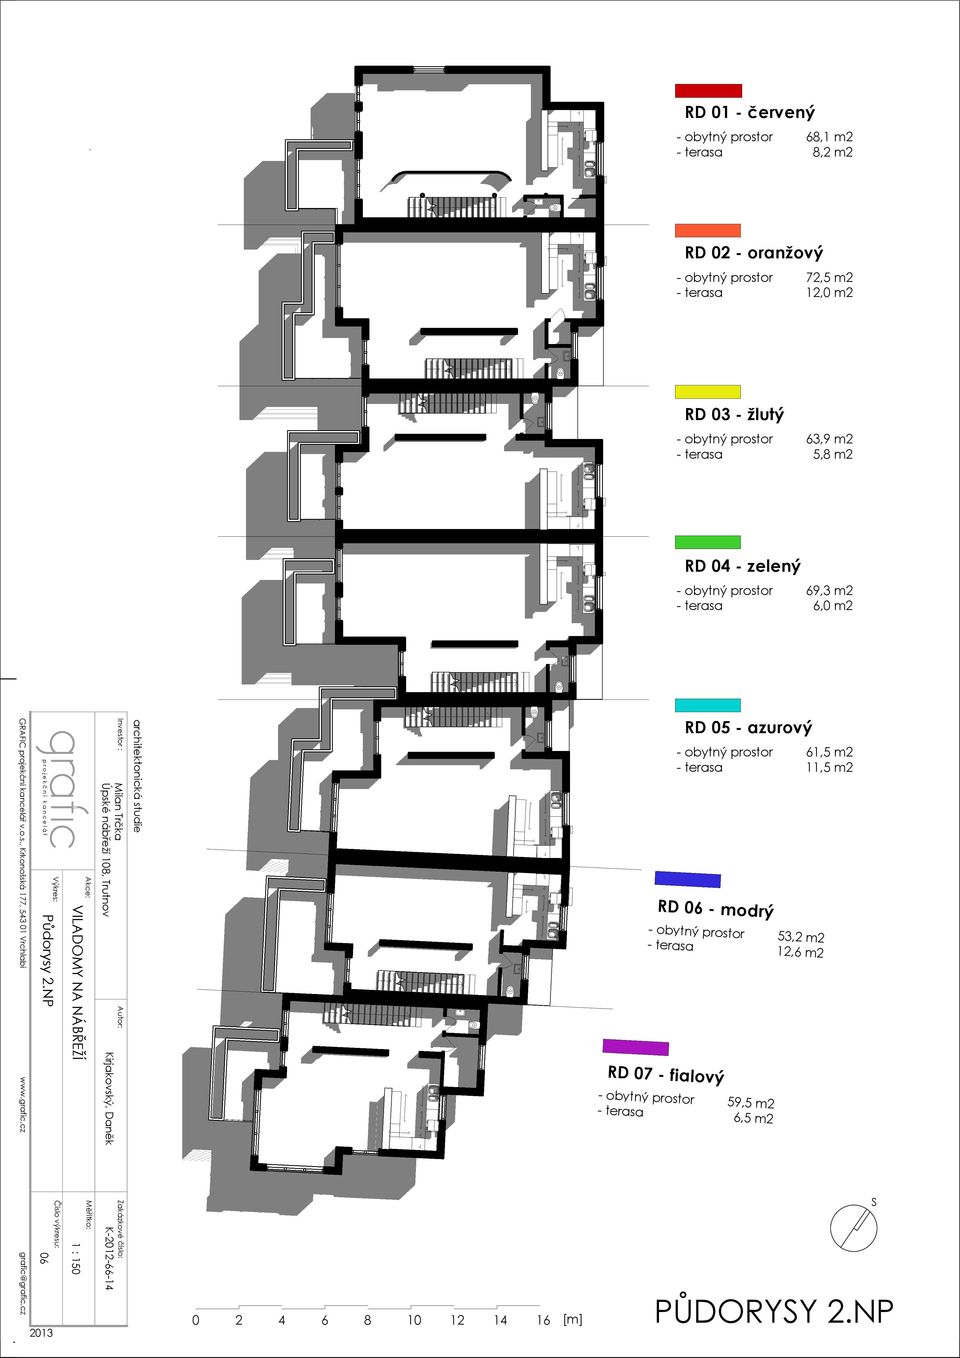 12,0 m2 RD 03 - žlutý - obytný prostor 63,9 m2 - terasa 5,8 m2 RD 04 - zelený - obytný prostor 69,3 m2 - terasa 6,0 m2 RD